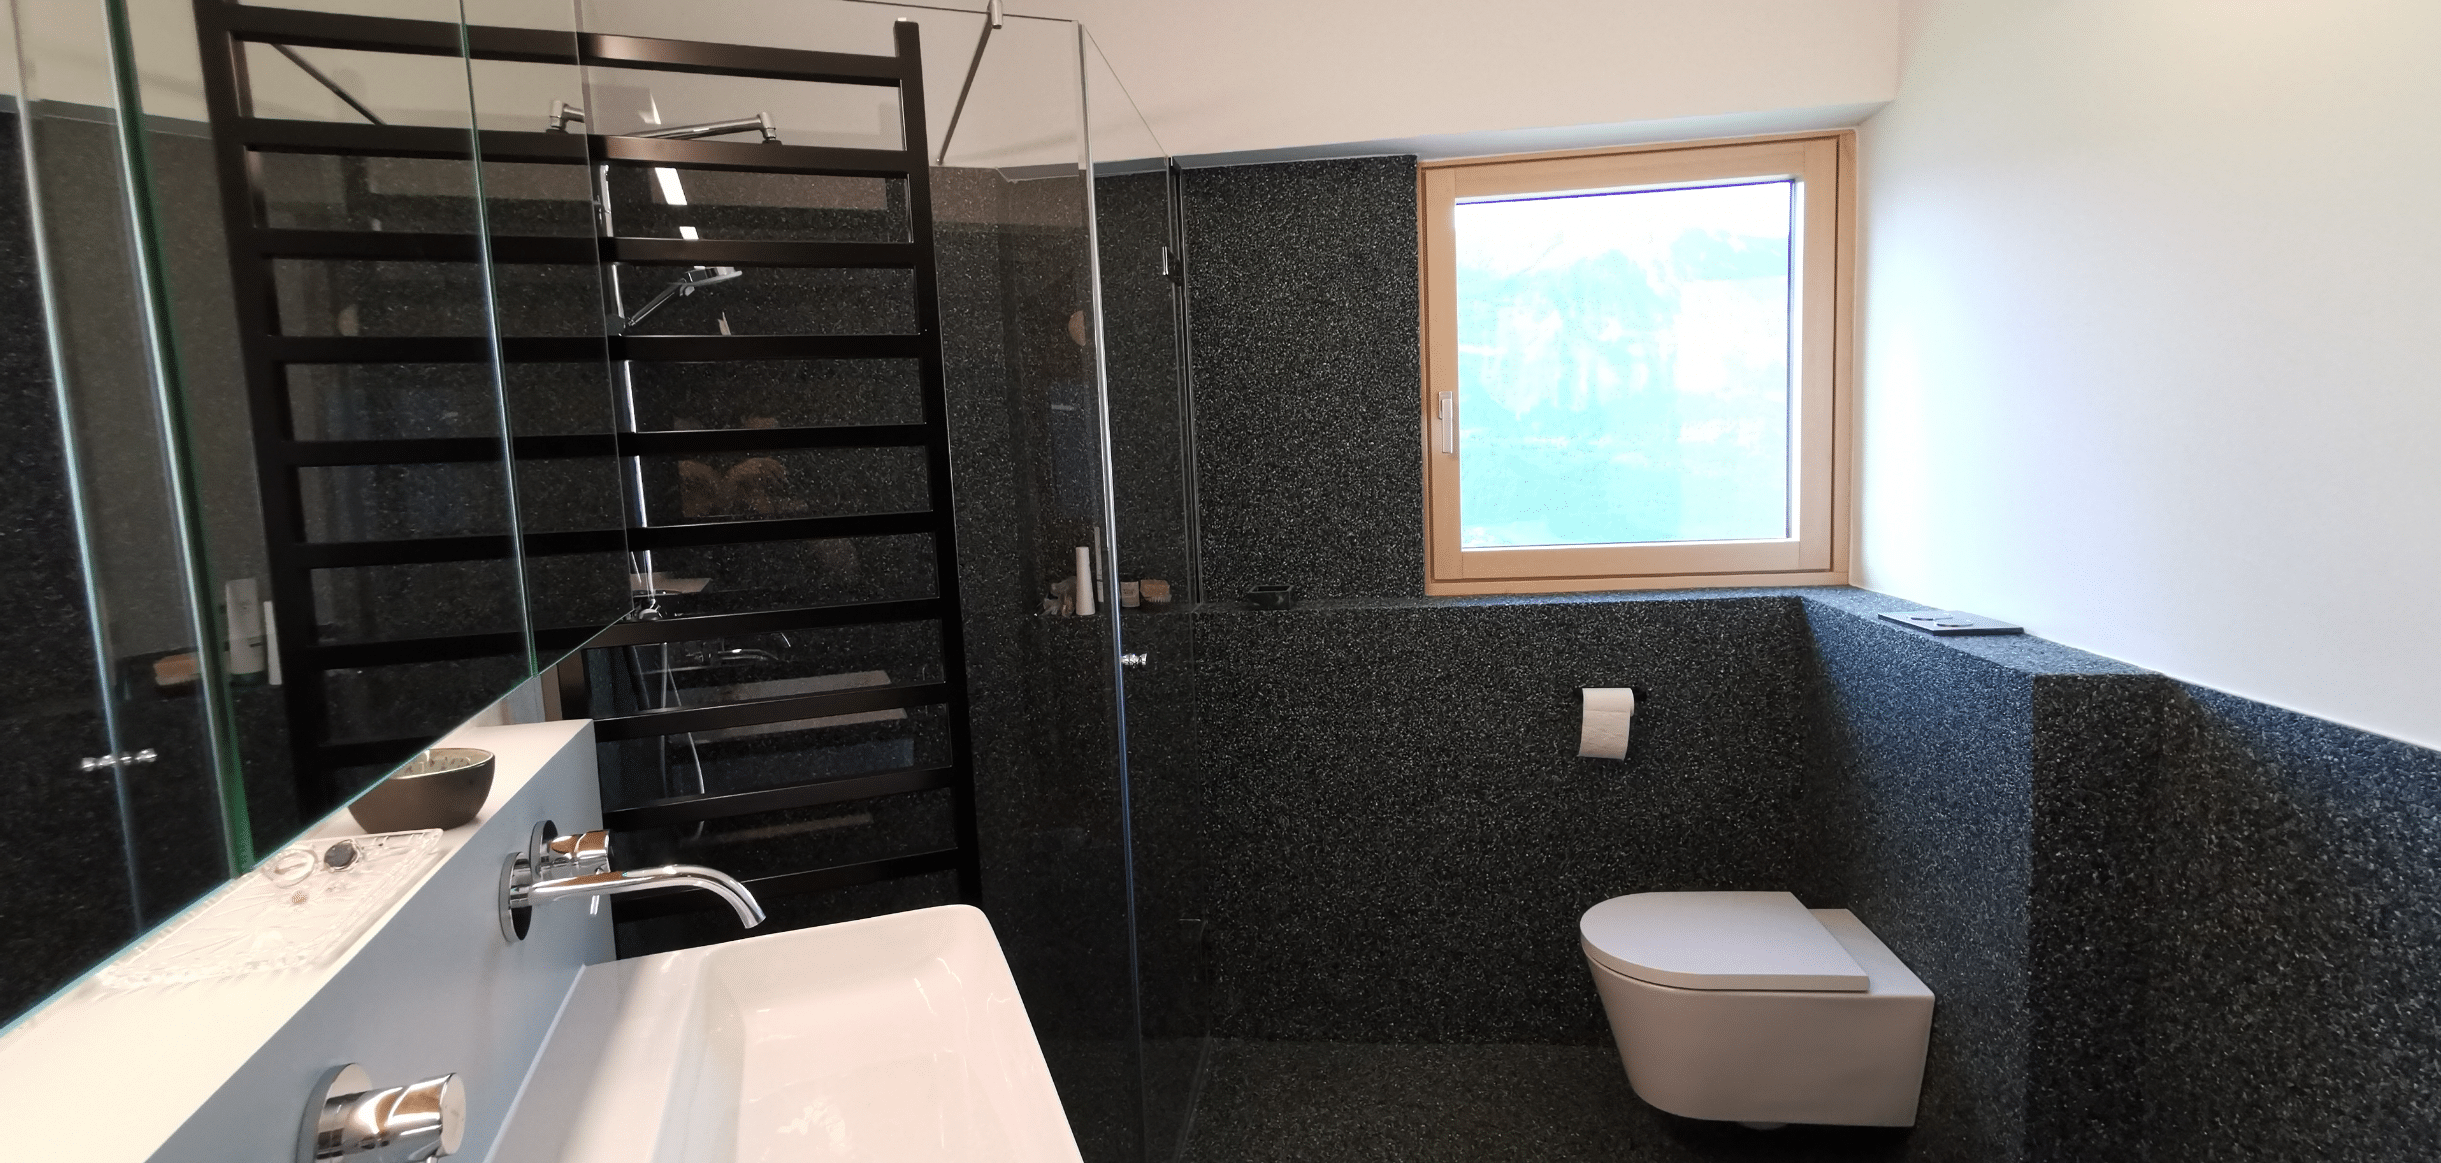 stoneCARPET präsentiert einen schwarzen Natursteinbelag als Verkleidung der Wände in einem modernen Badezimmer mit barrierefreier Dusche.